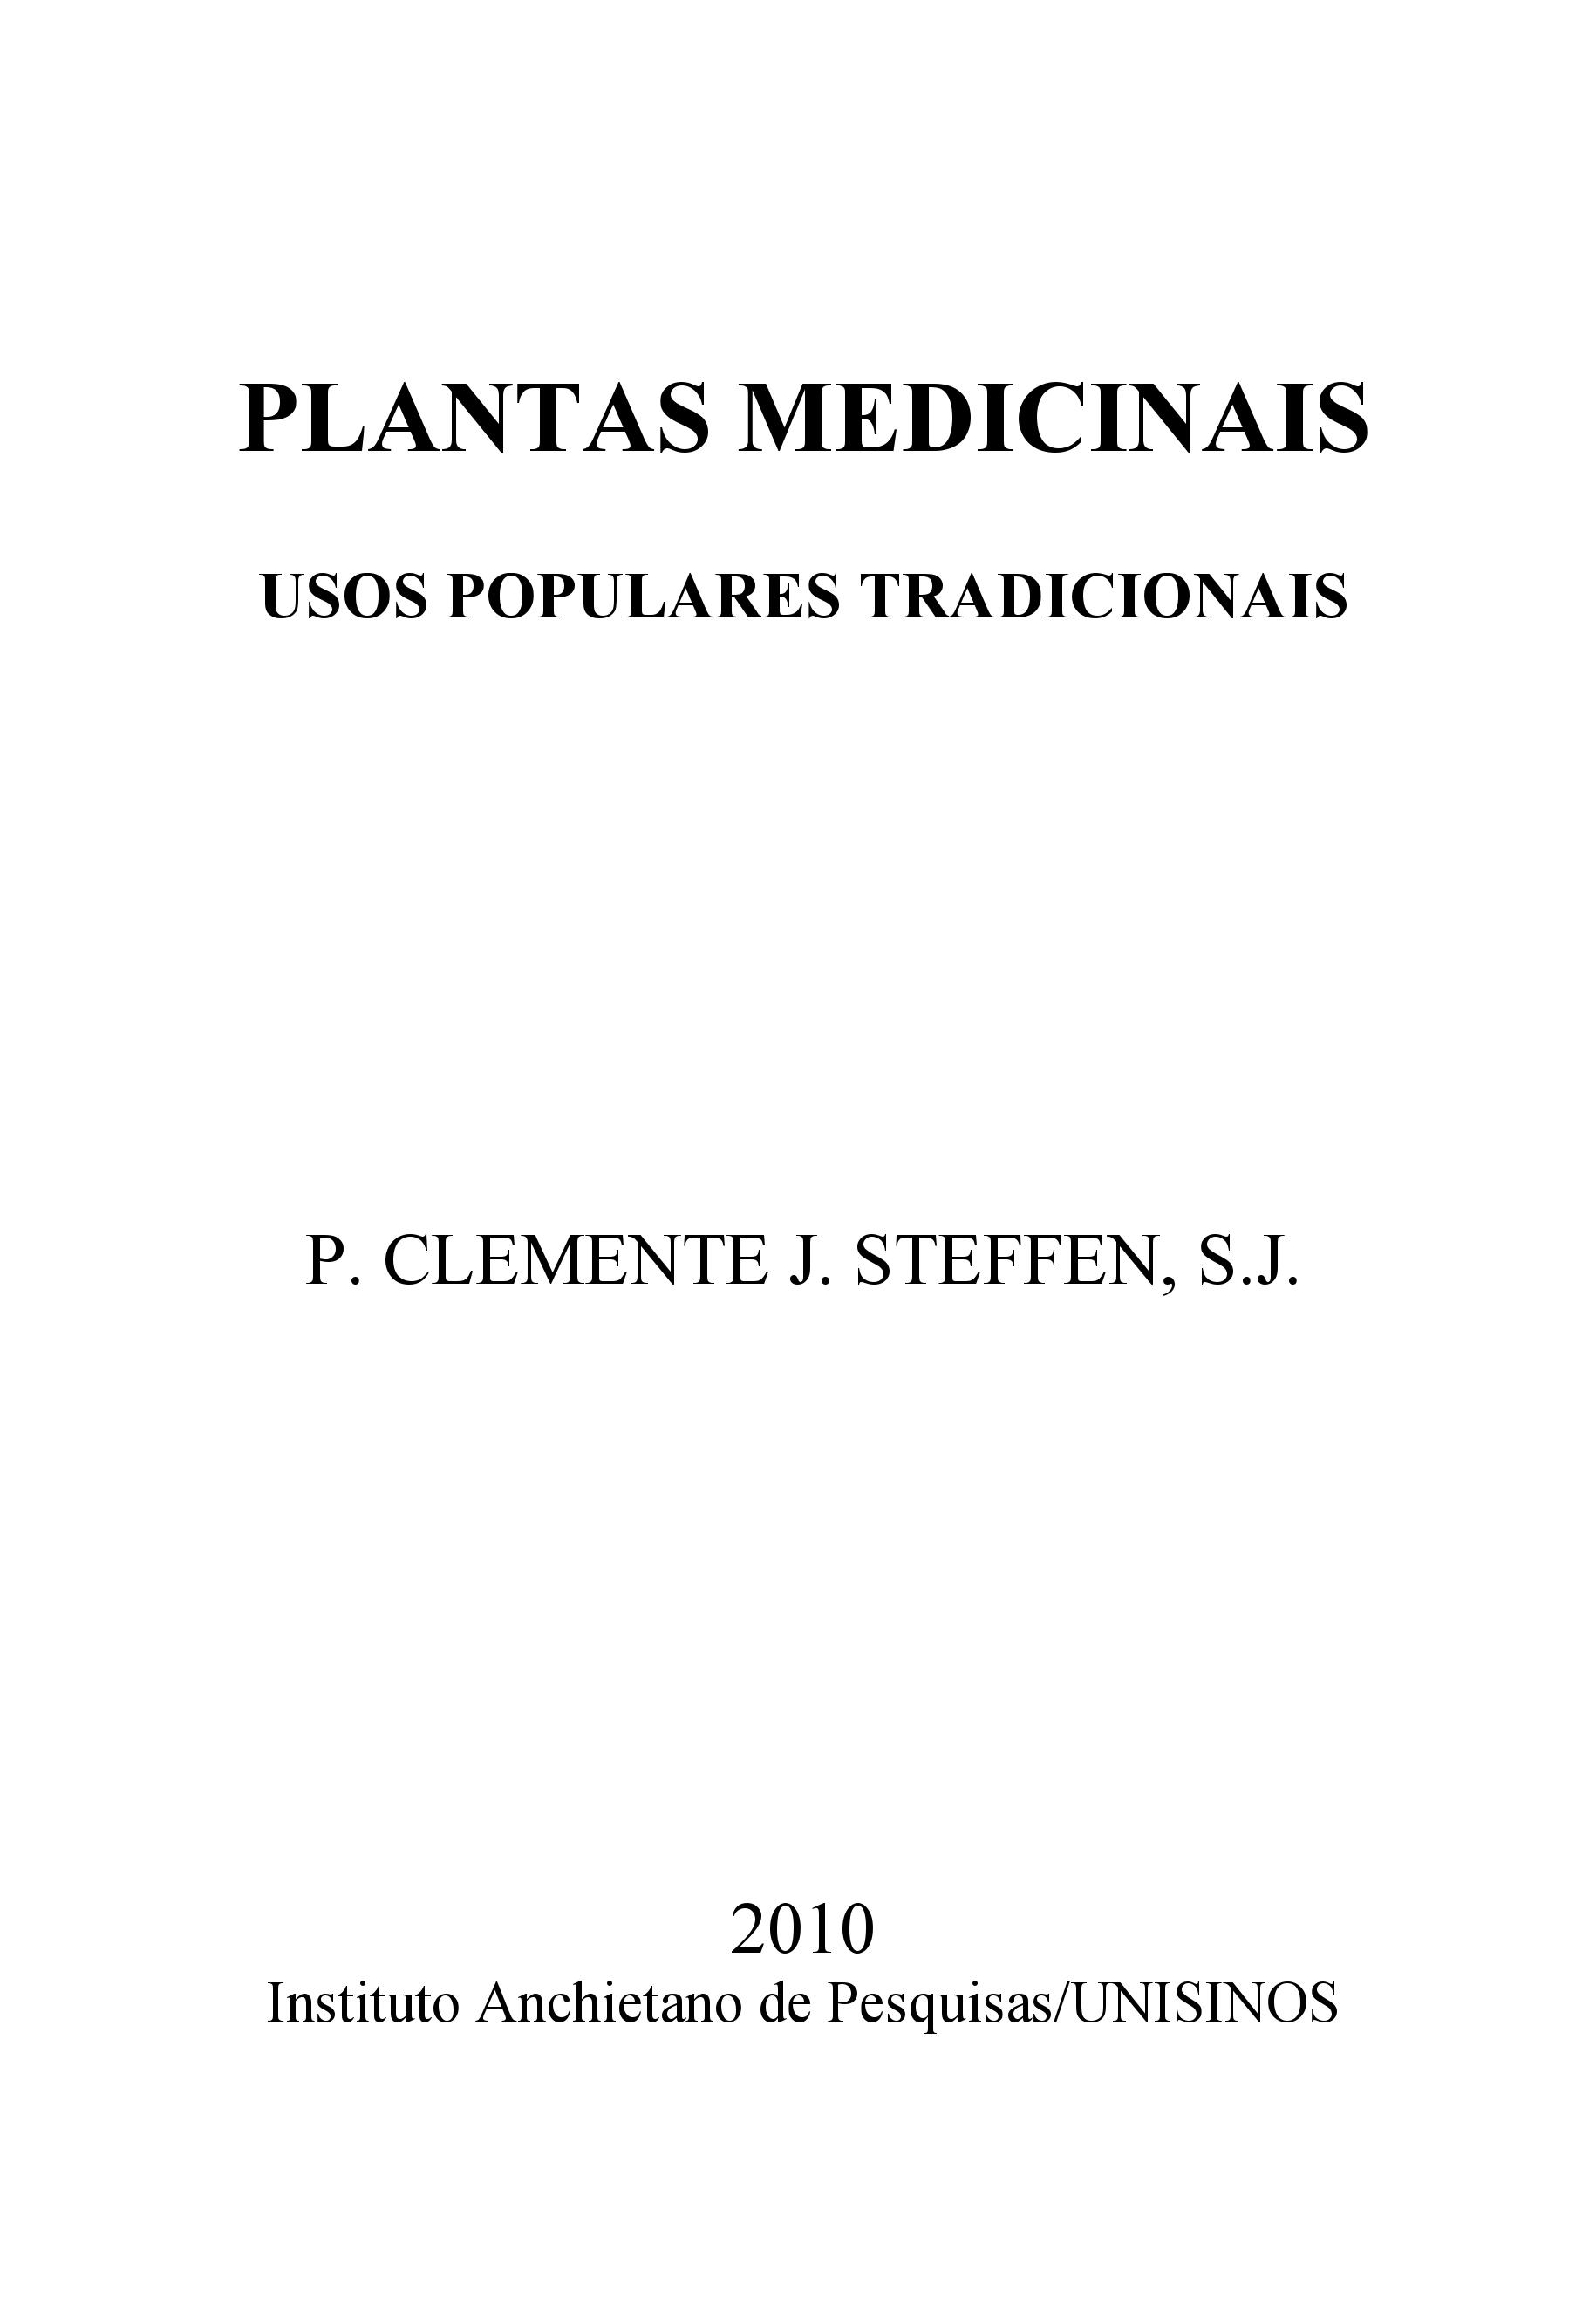 Plantas medicinais – Usos populares tradicionais